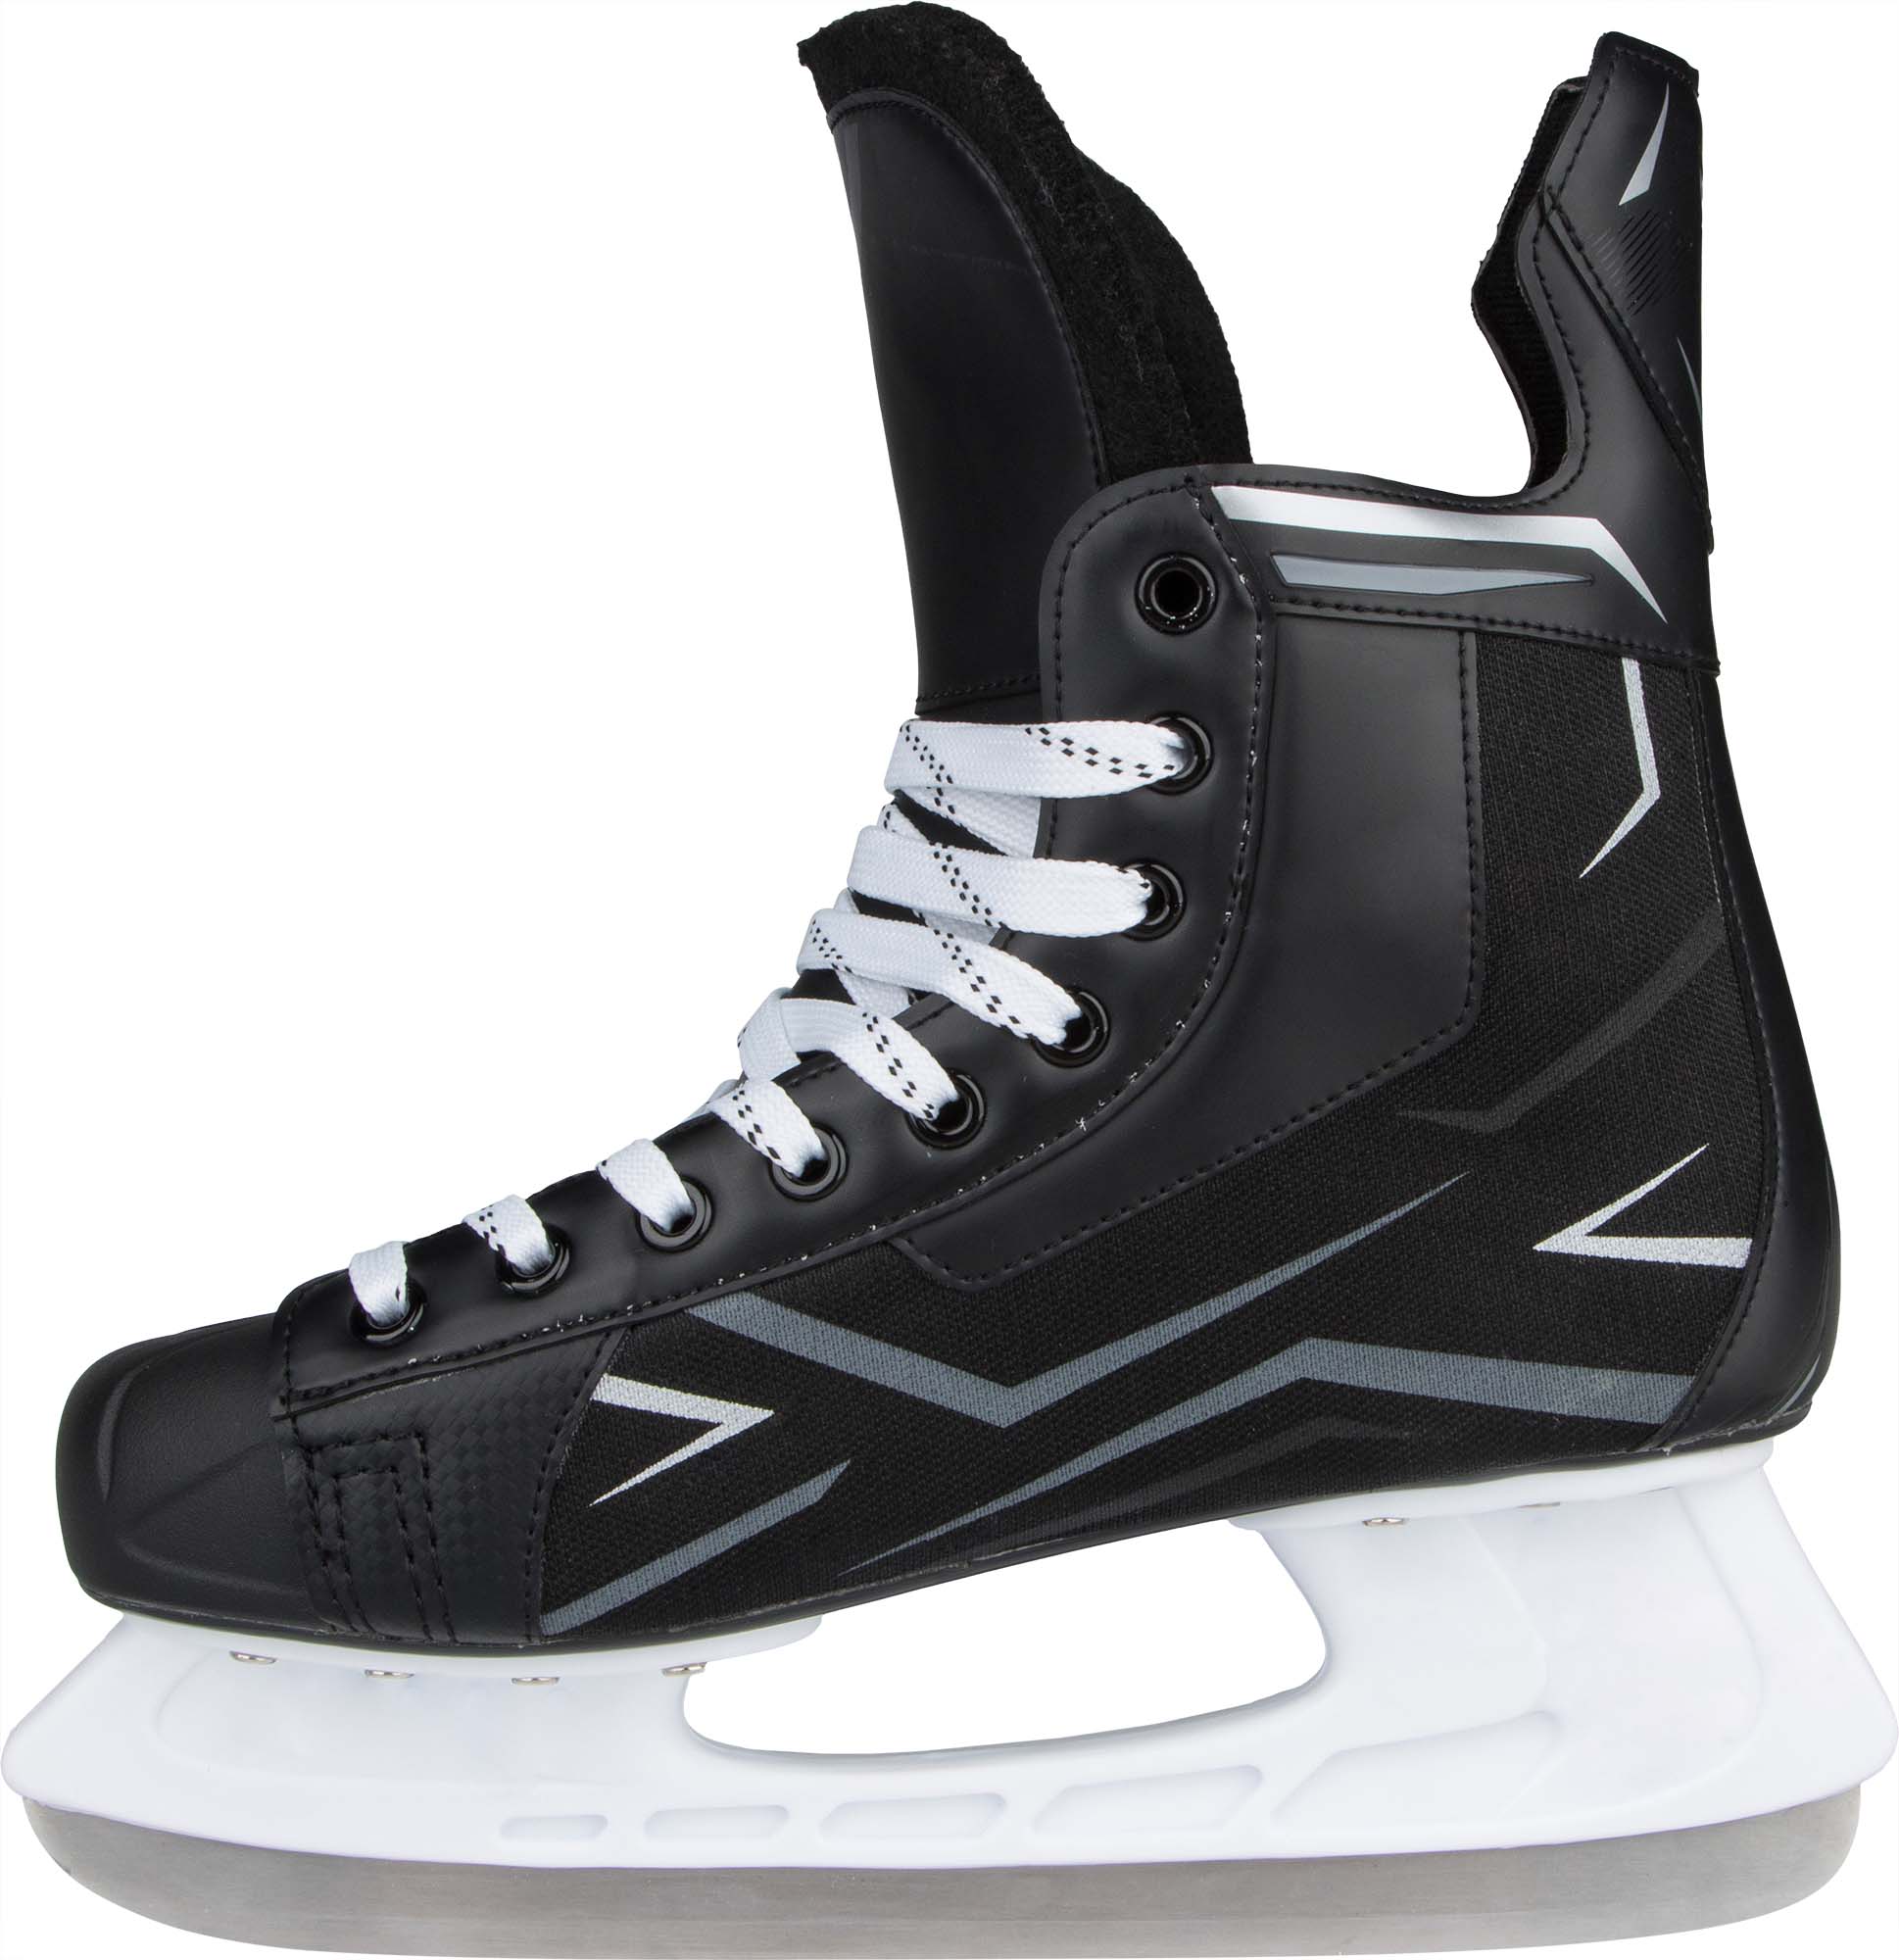 Men’s ice skates